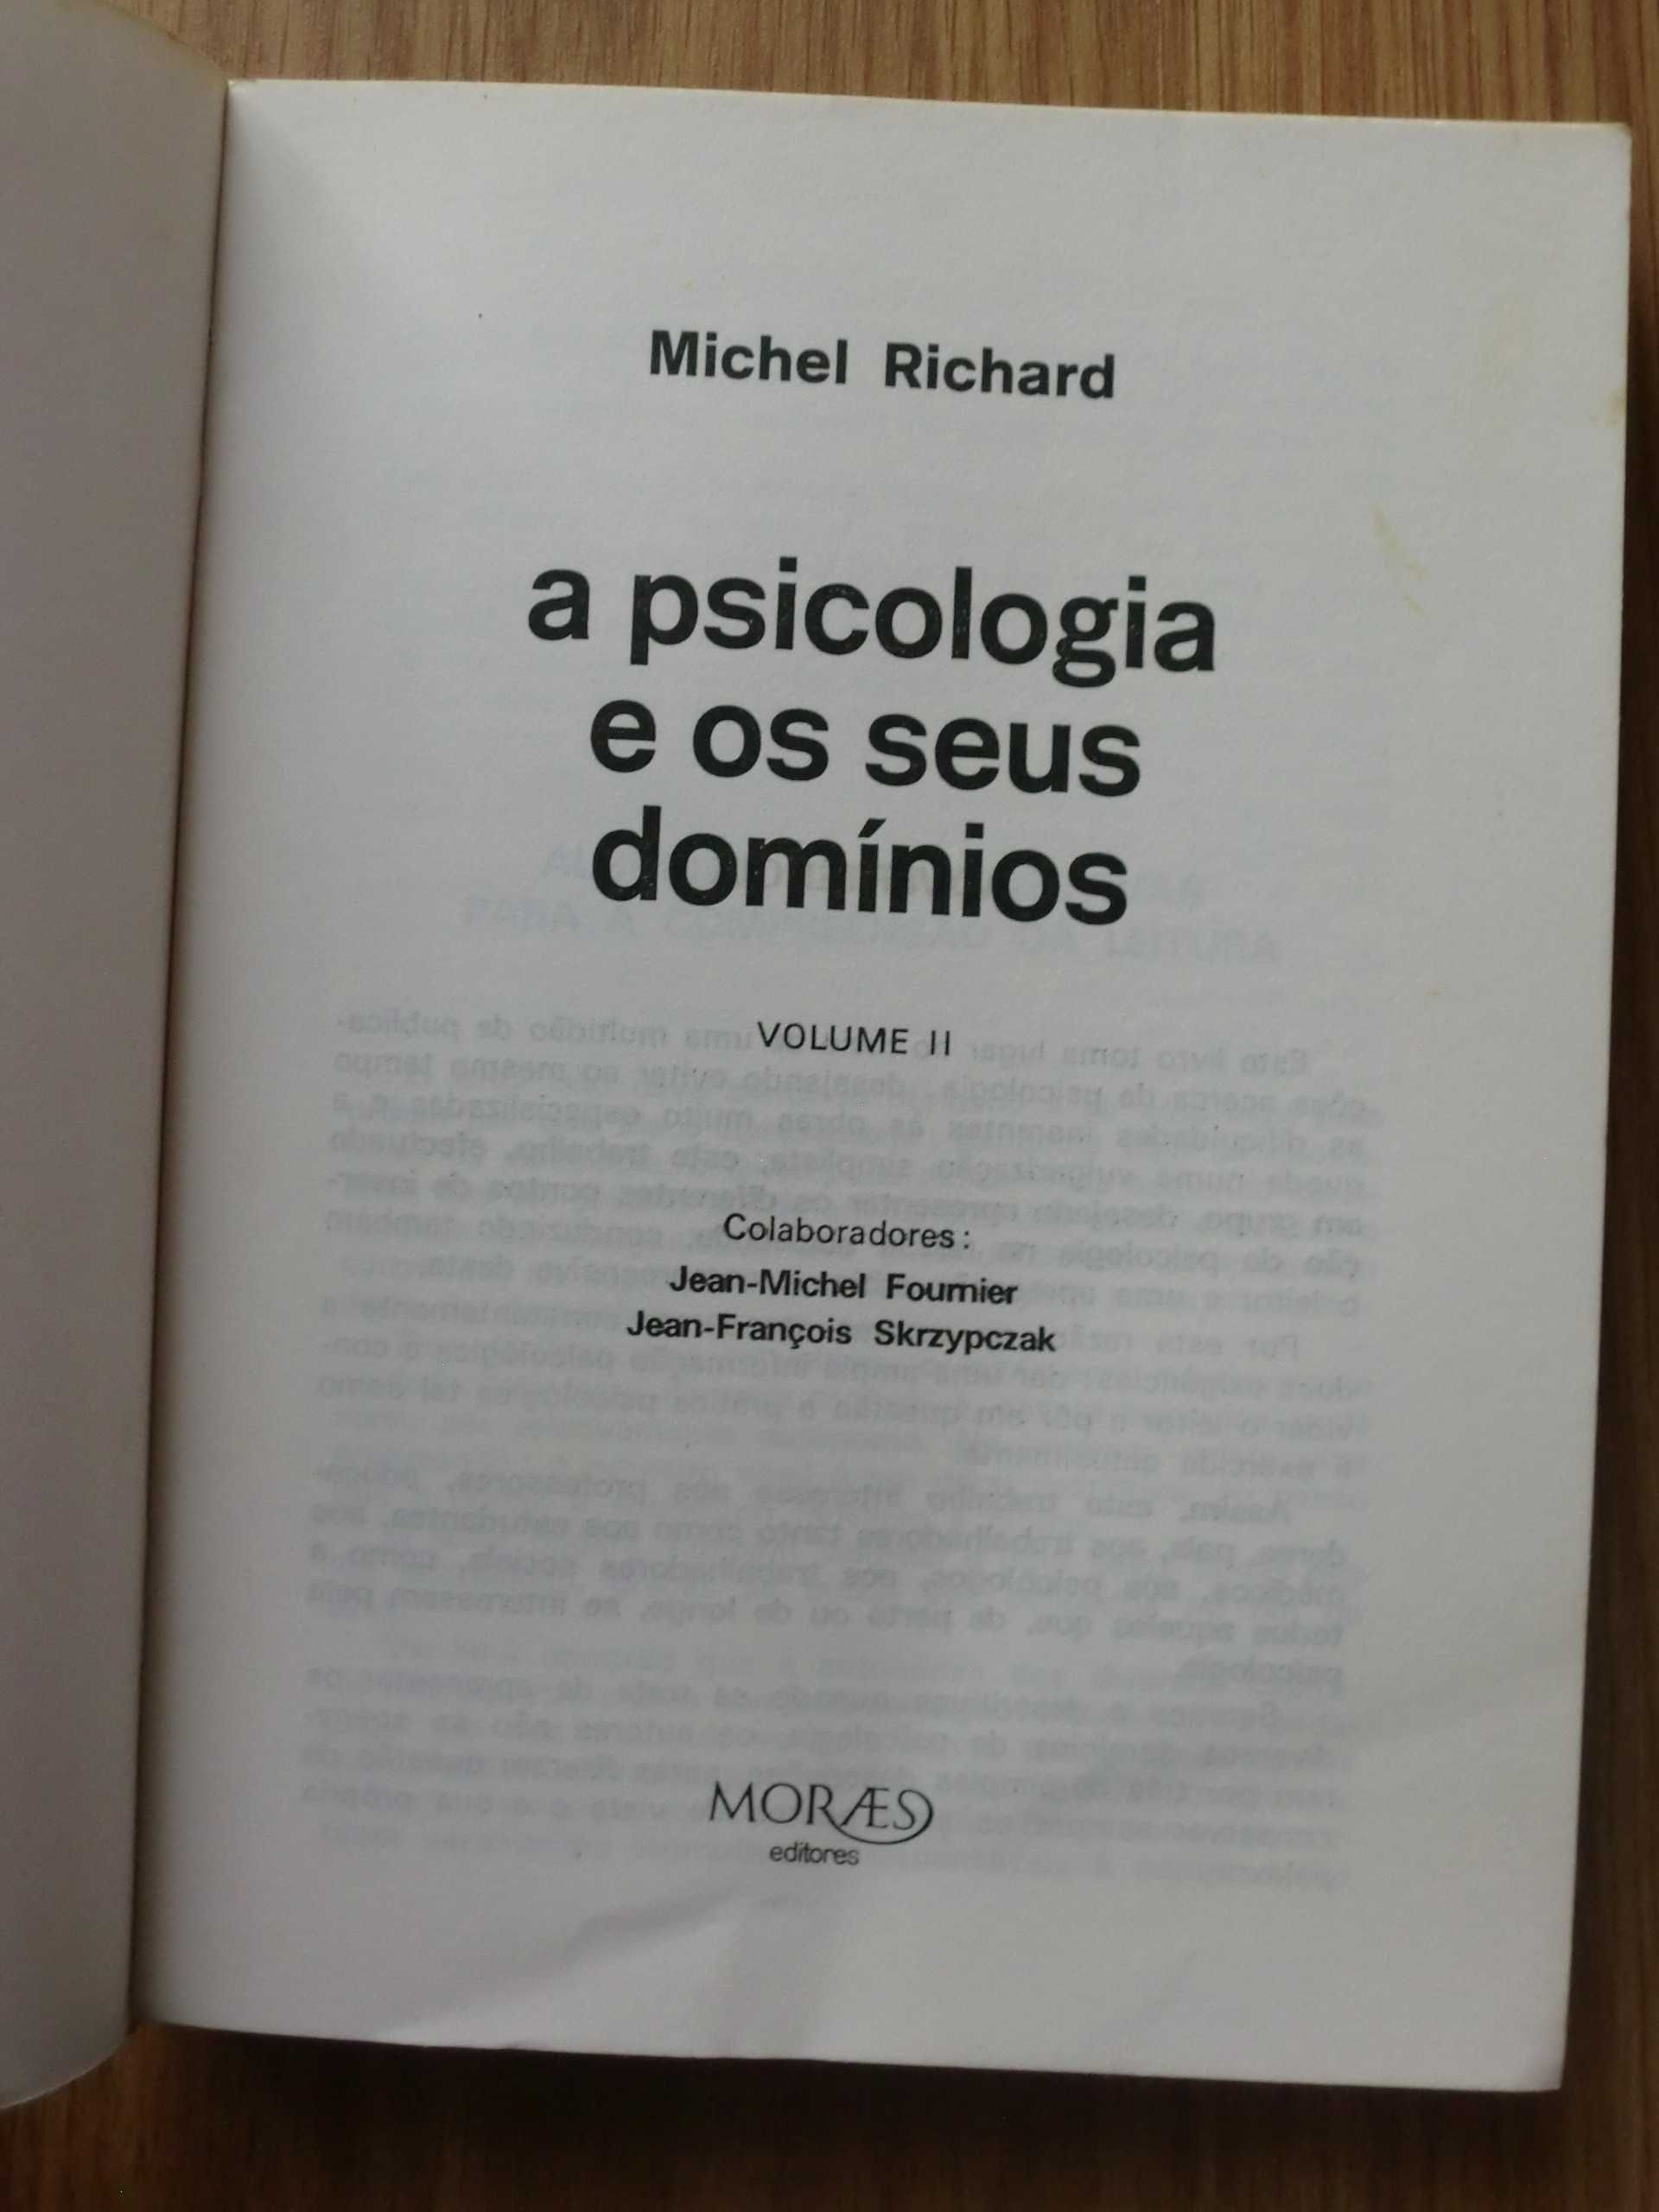 A Psicologia e os seus domínios
( de Freud a Lacan)
de Michel Richard